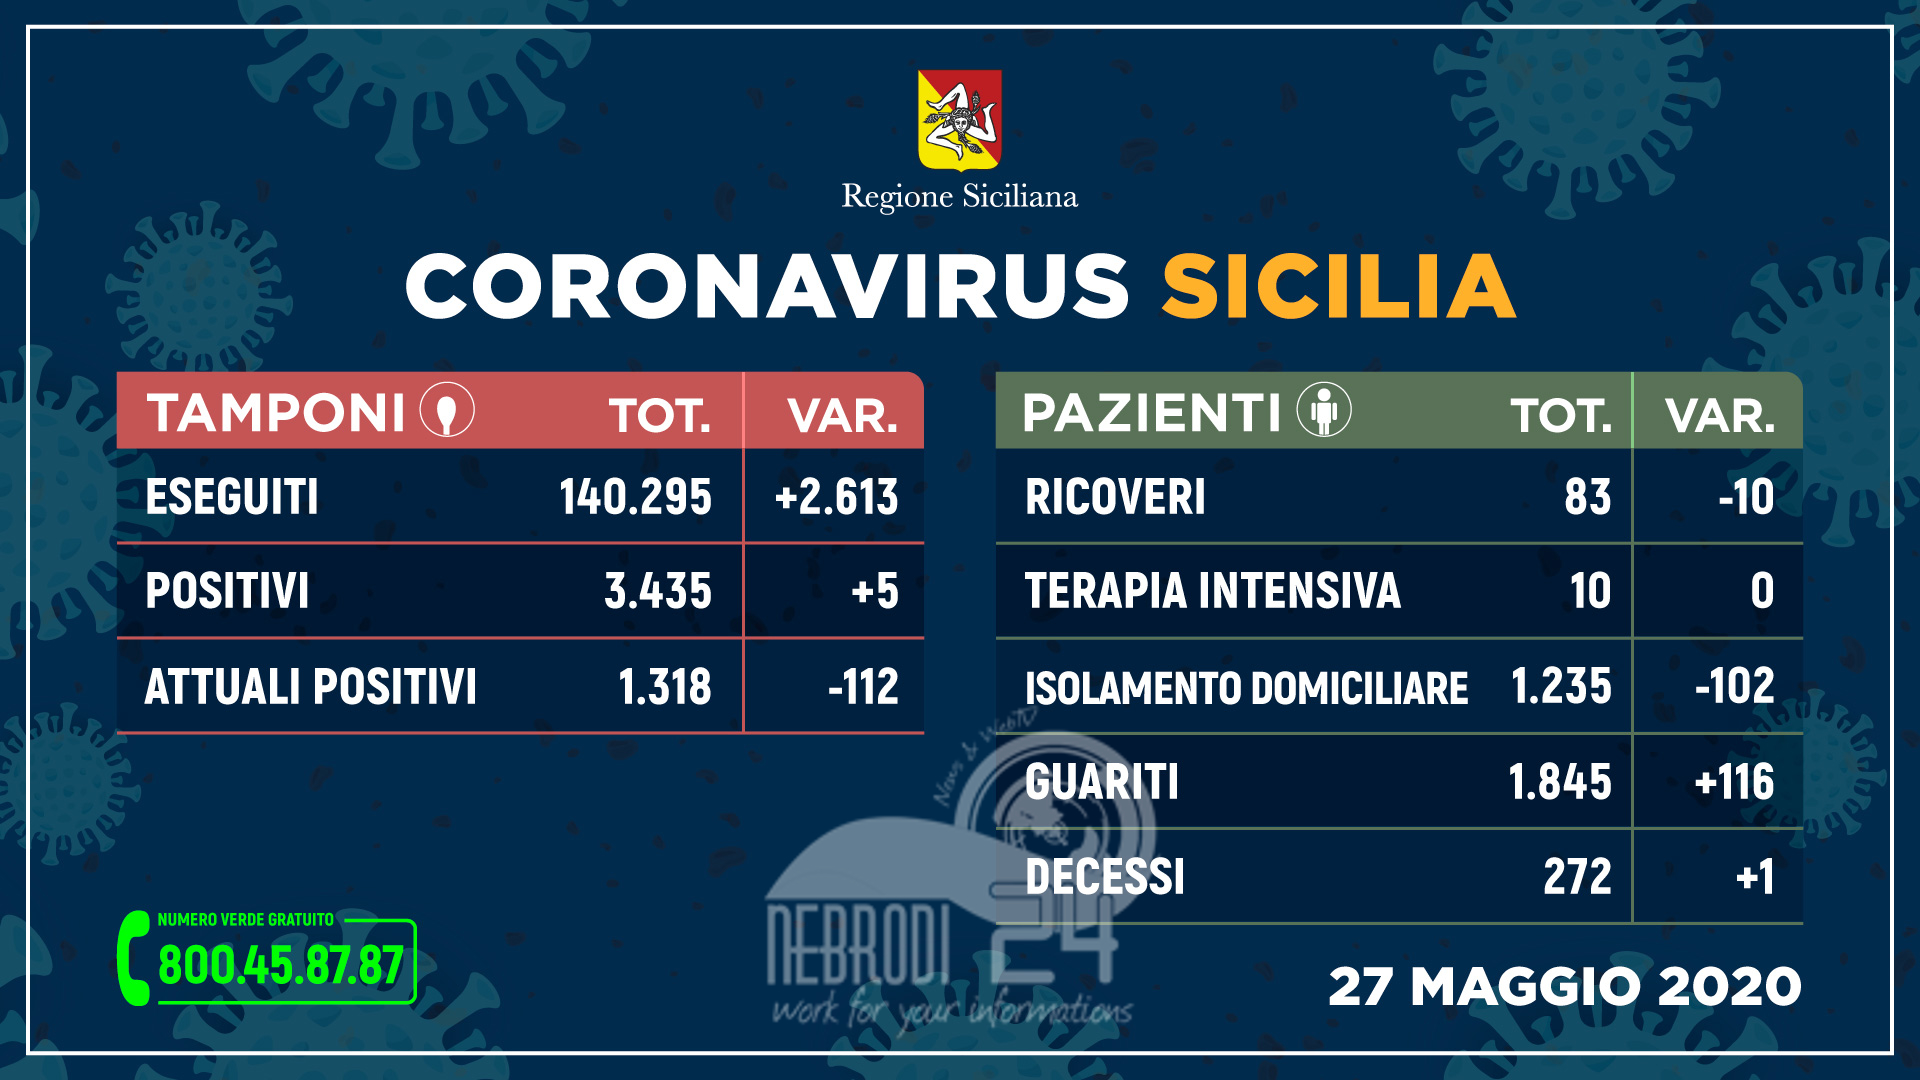 Coronavirus: in Sicilia boom di guariti e un solo decesso. Positivi +5 rispetto a ieri!